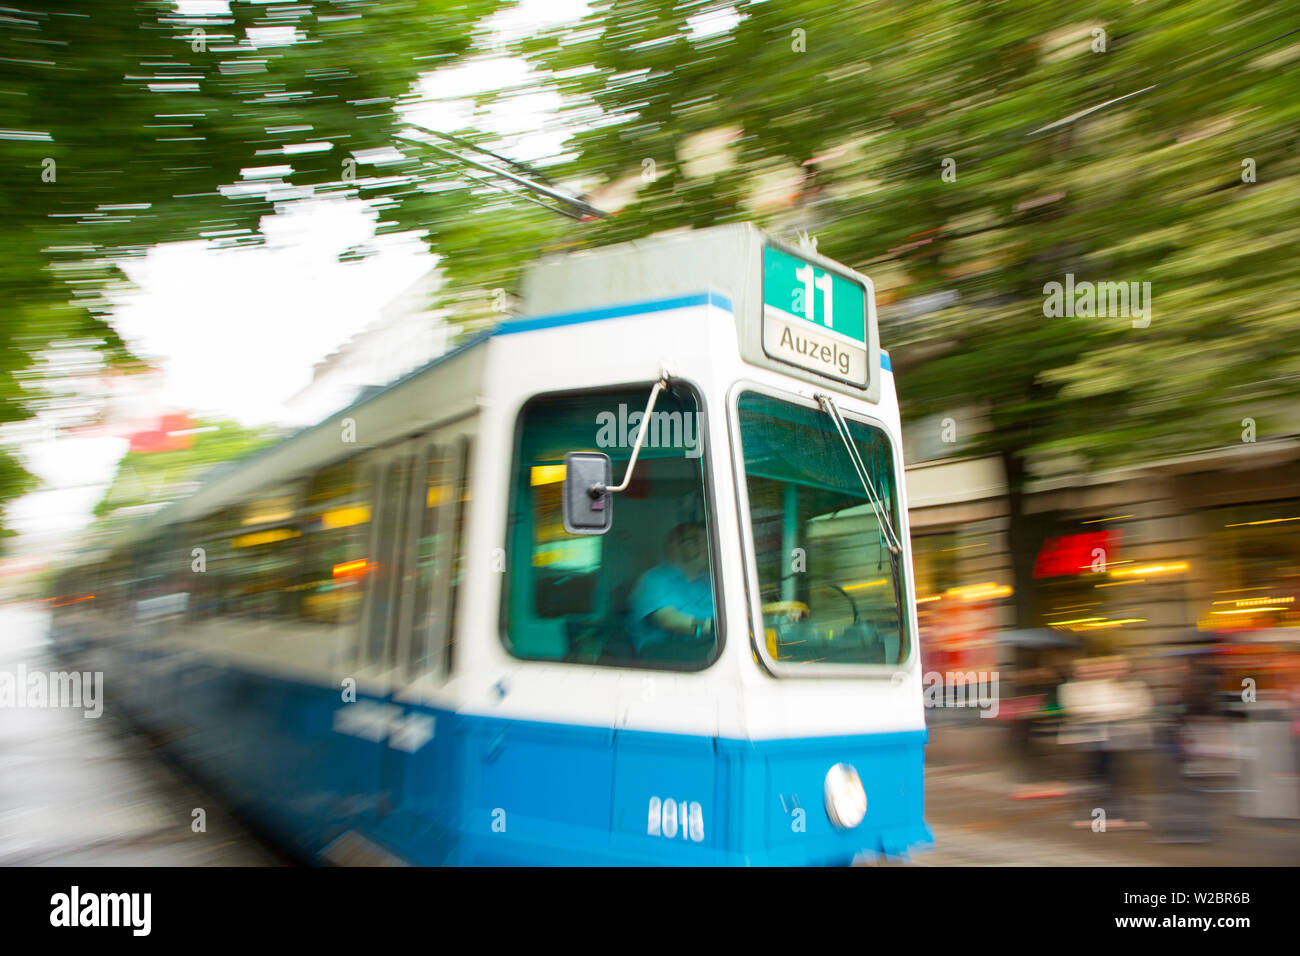 Tram, Zurich, Switzerland Stock Photo